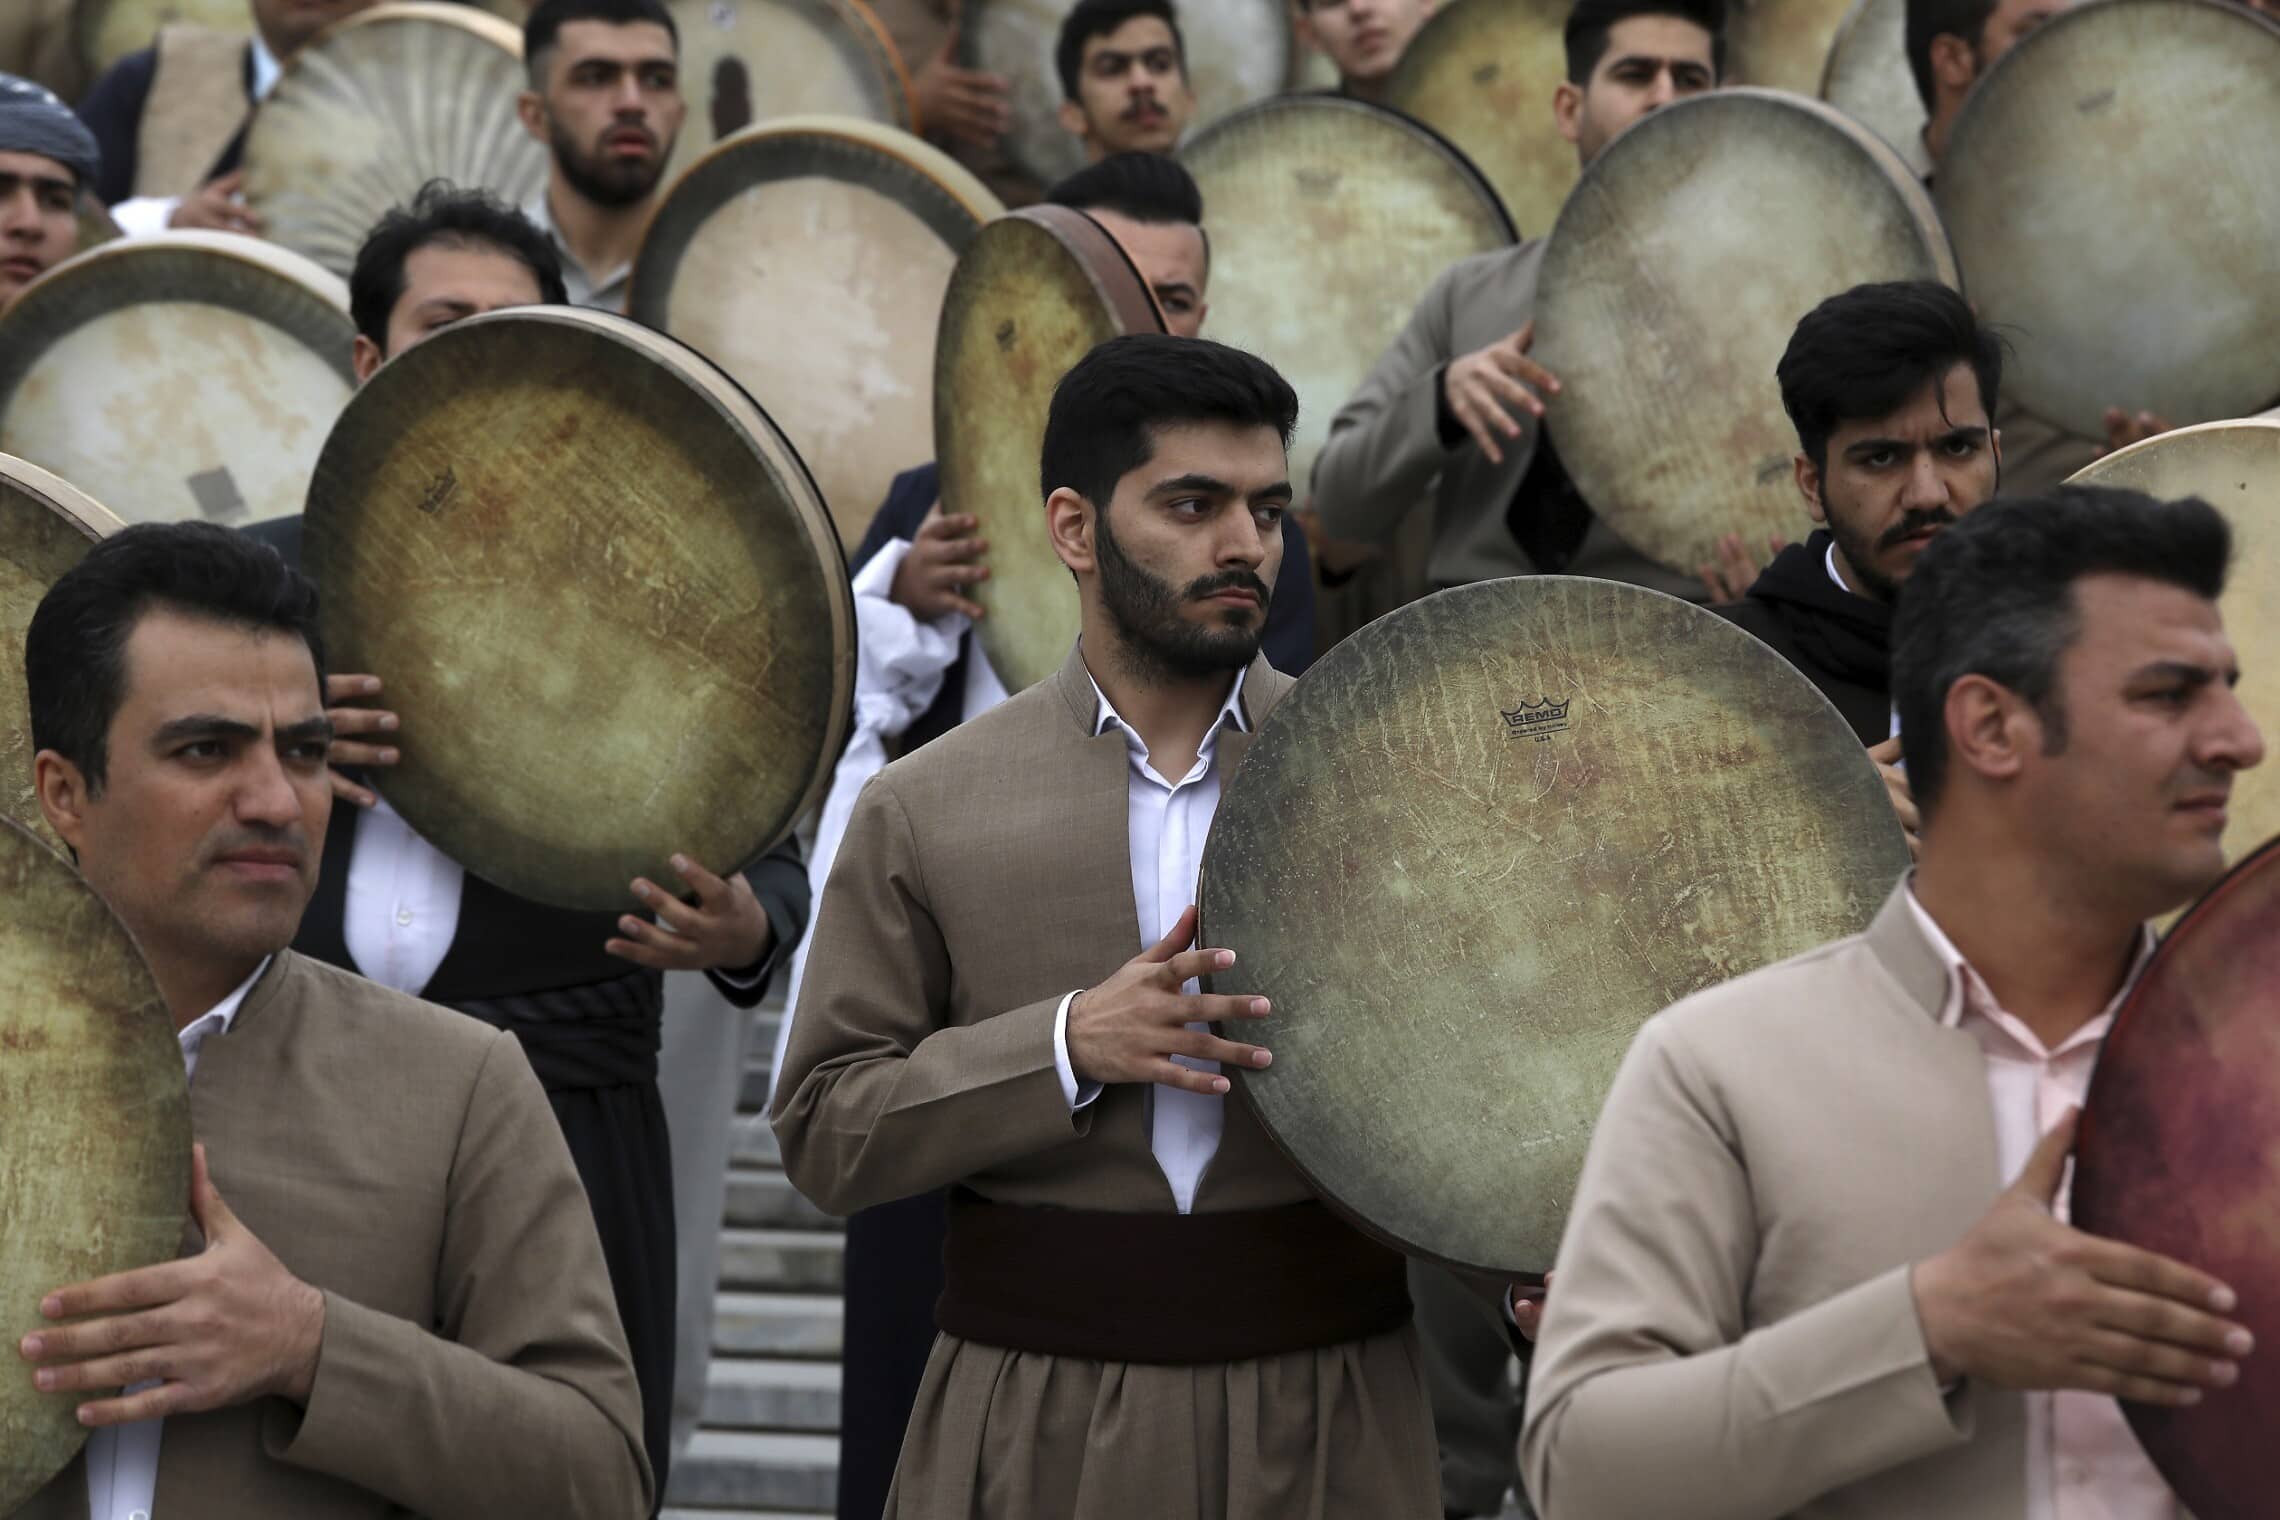 מוזיקאים באיראן מתופפים בטקס לכבוד חג נורוז בטהרן, 14 במרץ 2022 (צילום: AP Photo/Vahid Salemi)